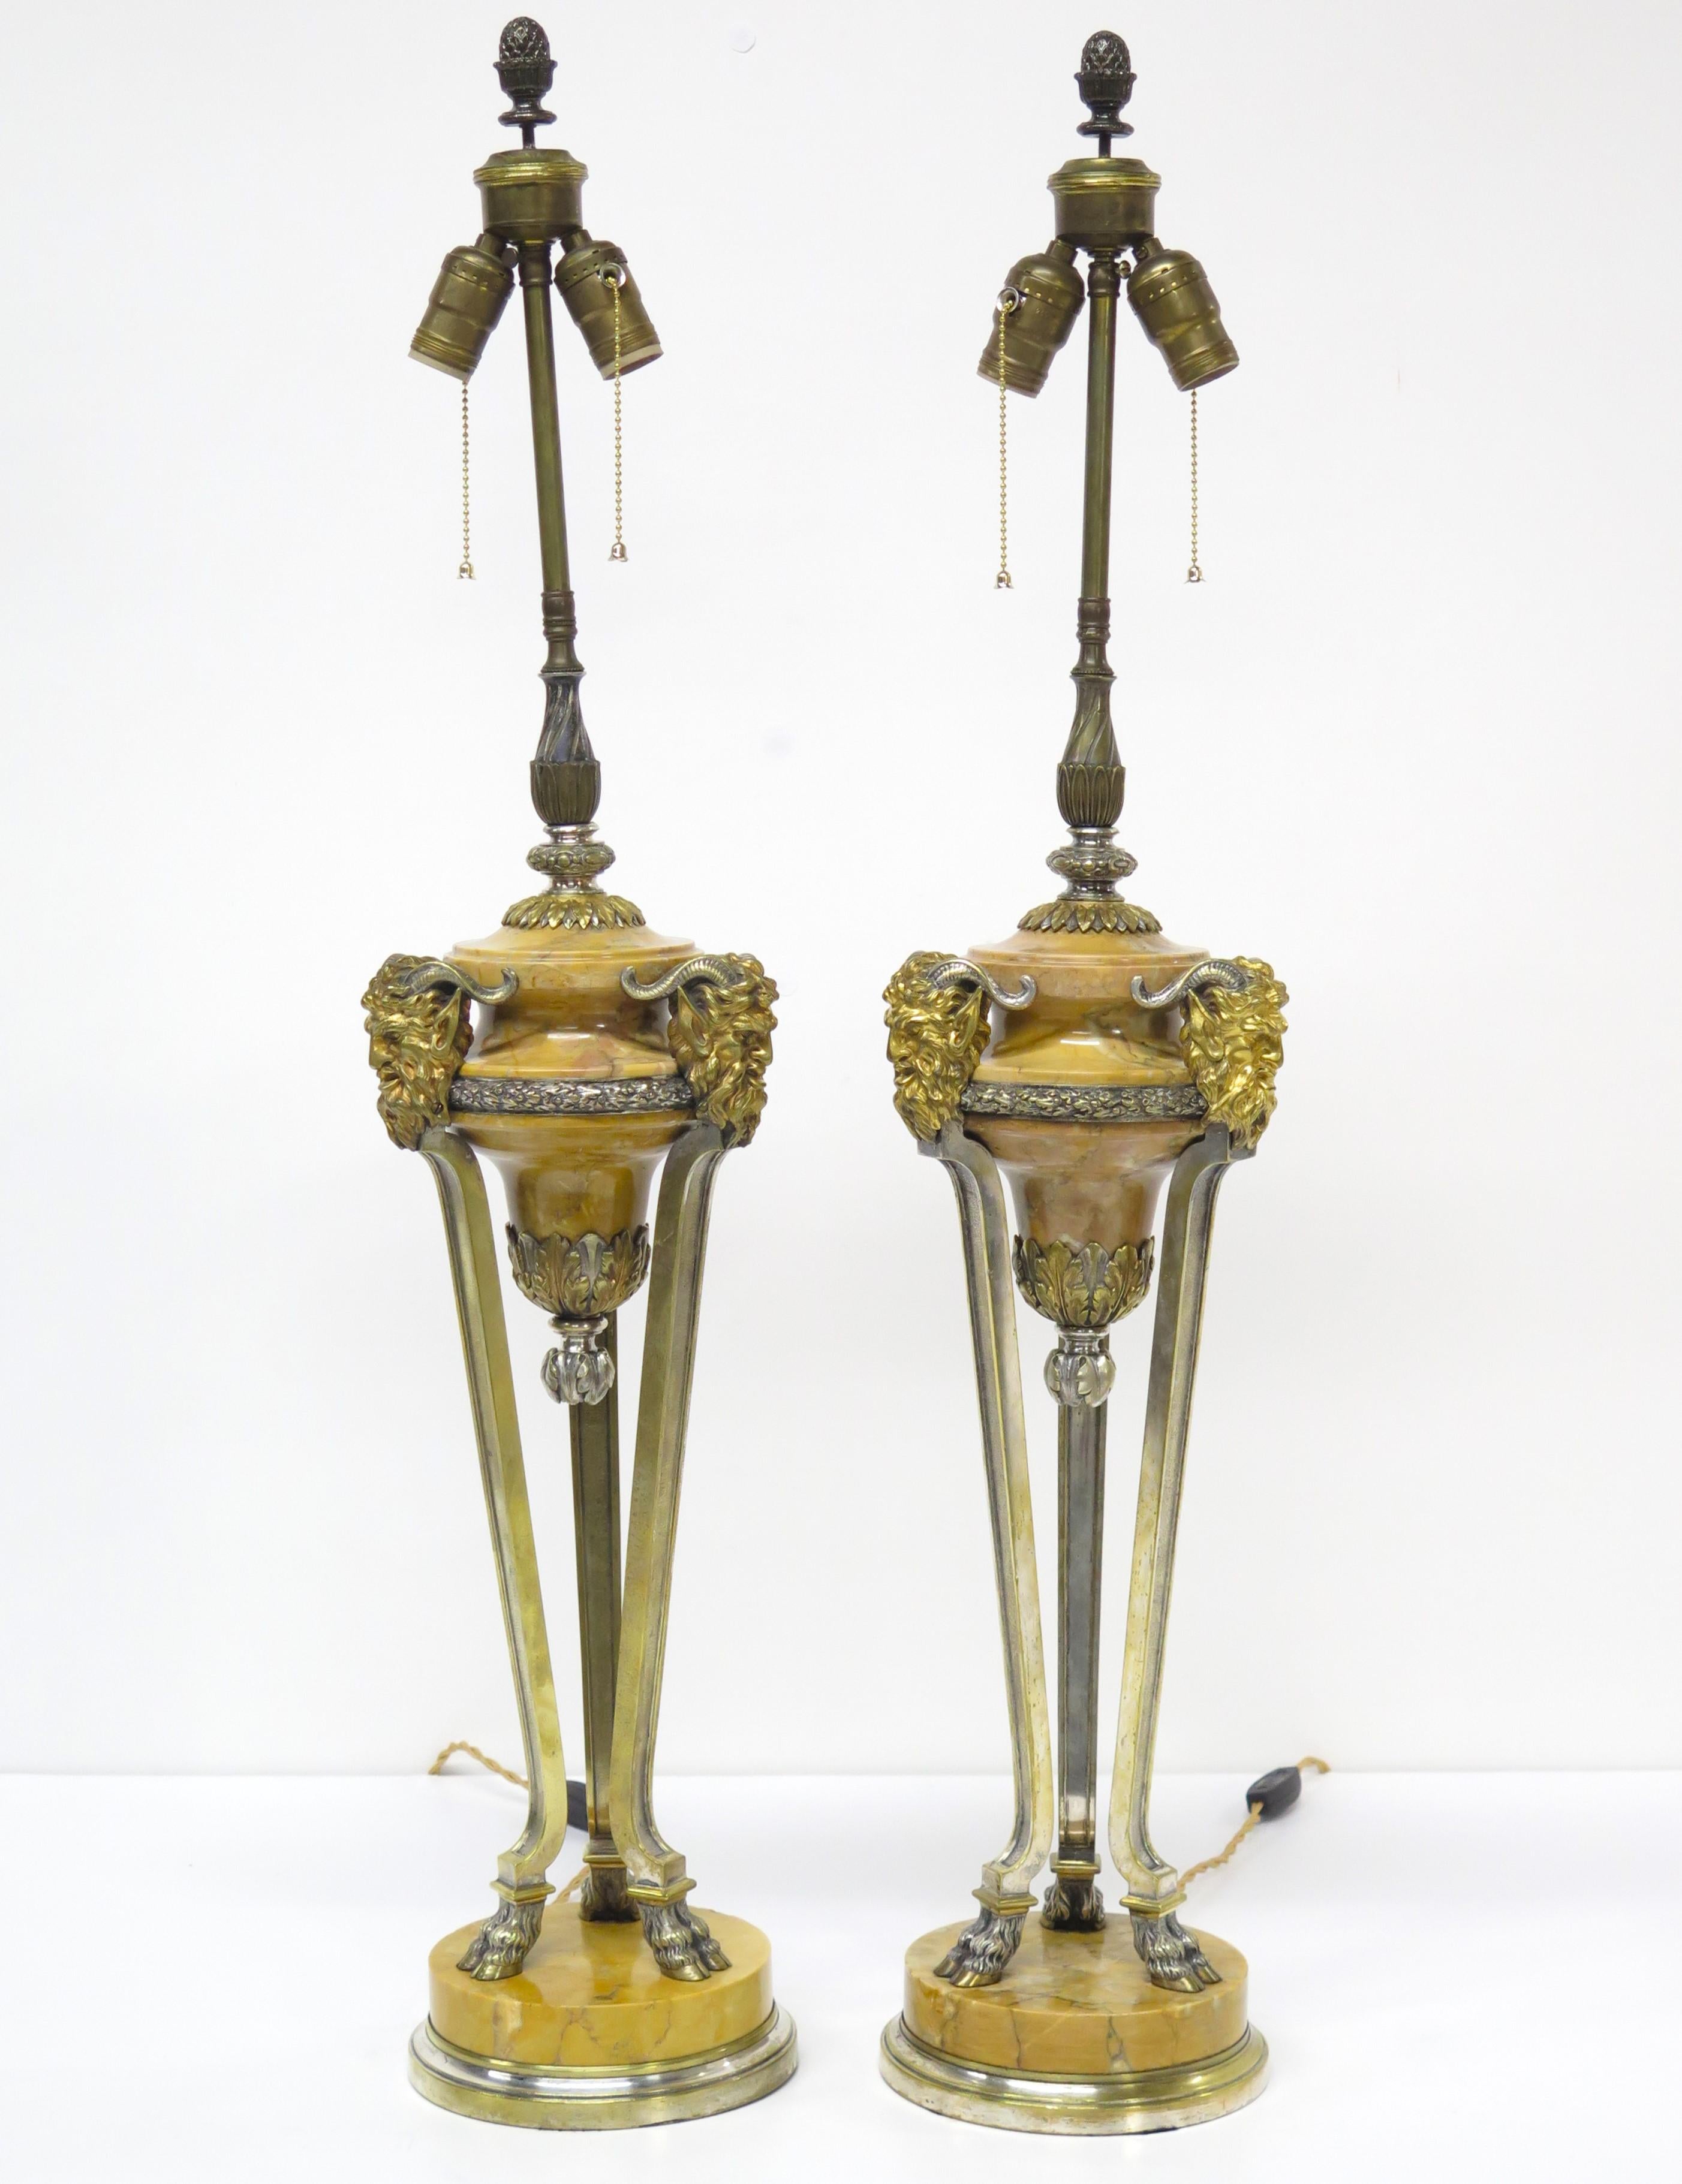 ein Paar feiner klassizistischer Tischlampen aus Siena-Marmor mit vergoldeten und silbervergoldeten Bronzebeschlägen und -stützen, als hohe schlanke Gefäße mit drei (3) beschlagenen Füßen und drei (3) gehörnten Satyrmasken, gedrehte Seidenkordel,